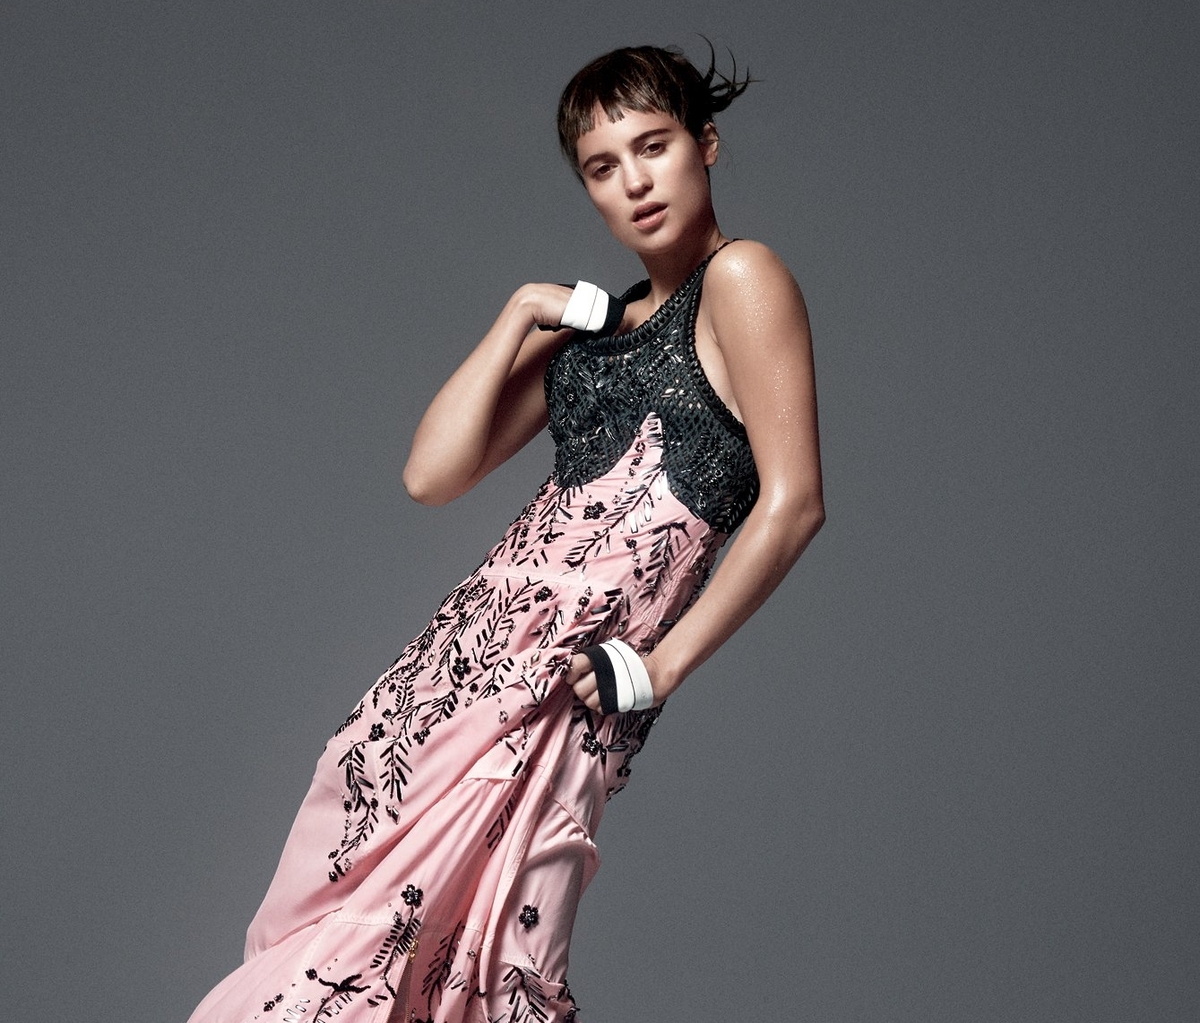 Алисия Викандер в журнале Vogue. Январь 2015